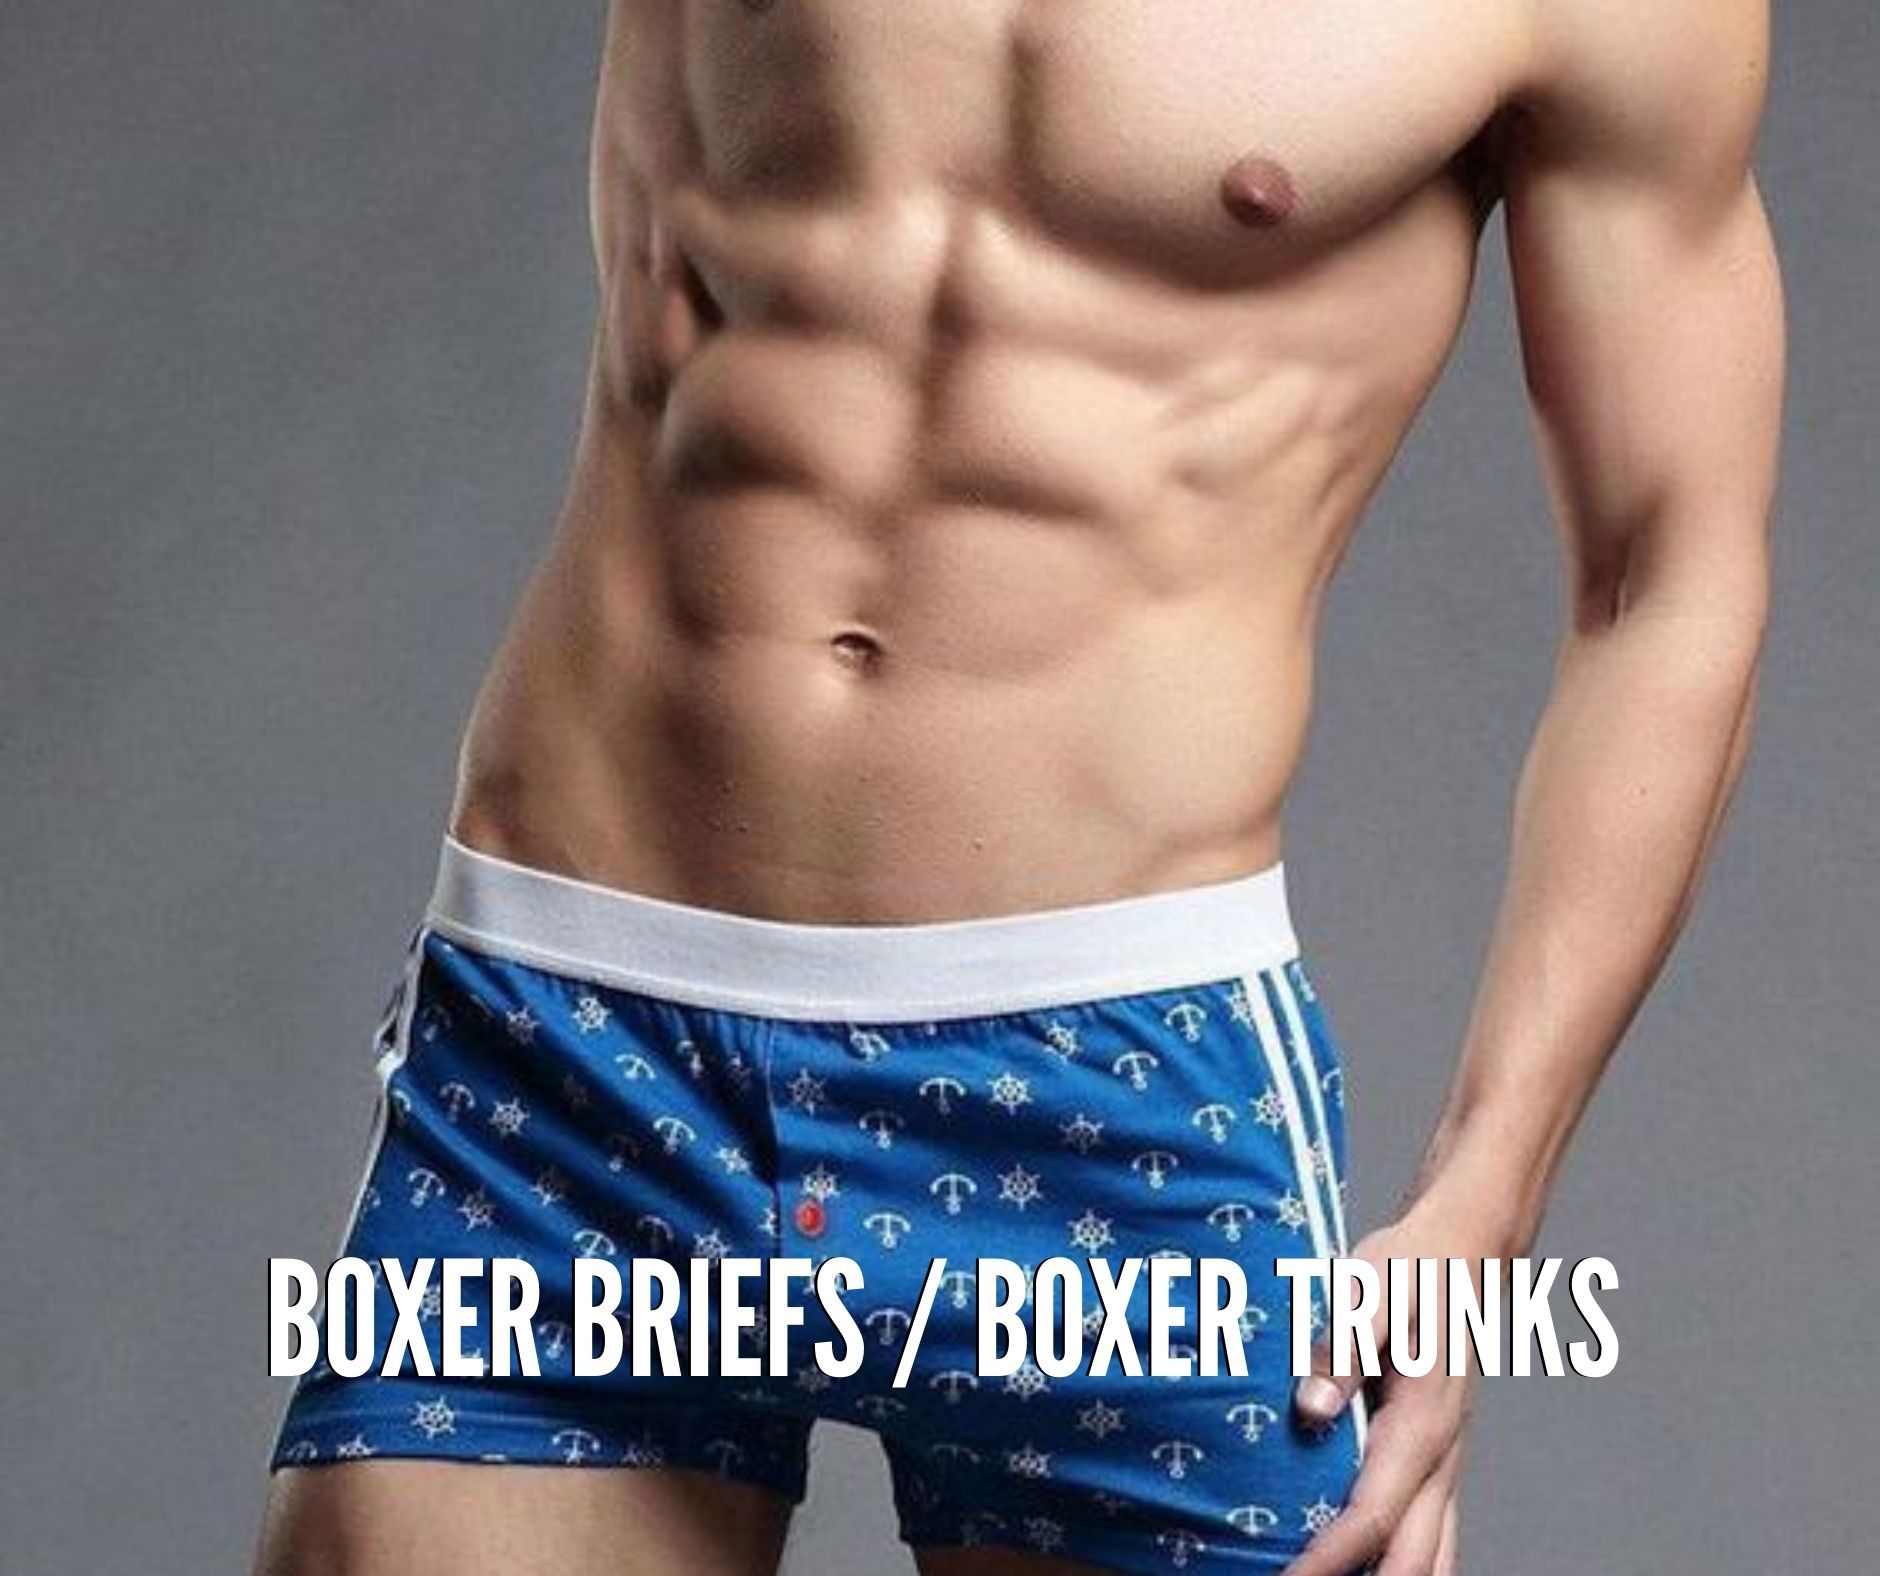 Men's Underwear Boxer Briefs